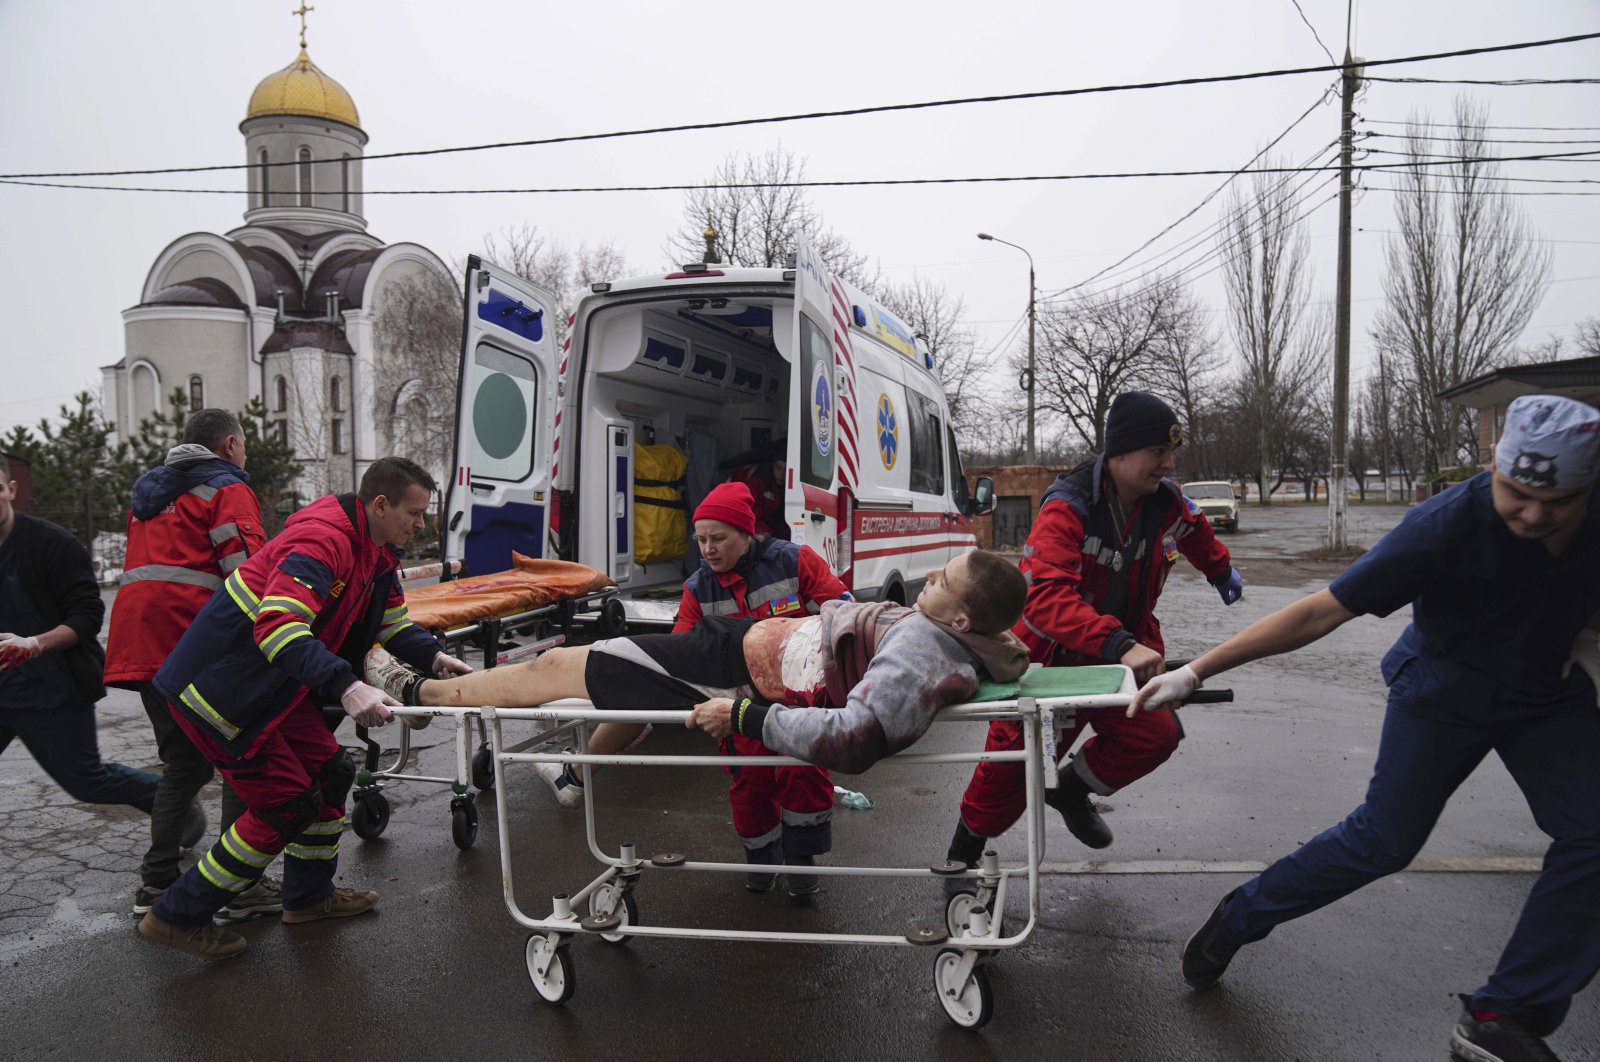 400 bin kişinin yaşadığı Mariupol’de ateşkes yürürlüğe girdi, tahliyeler başladı